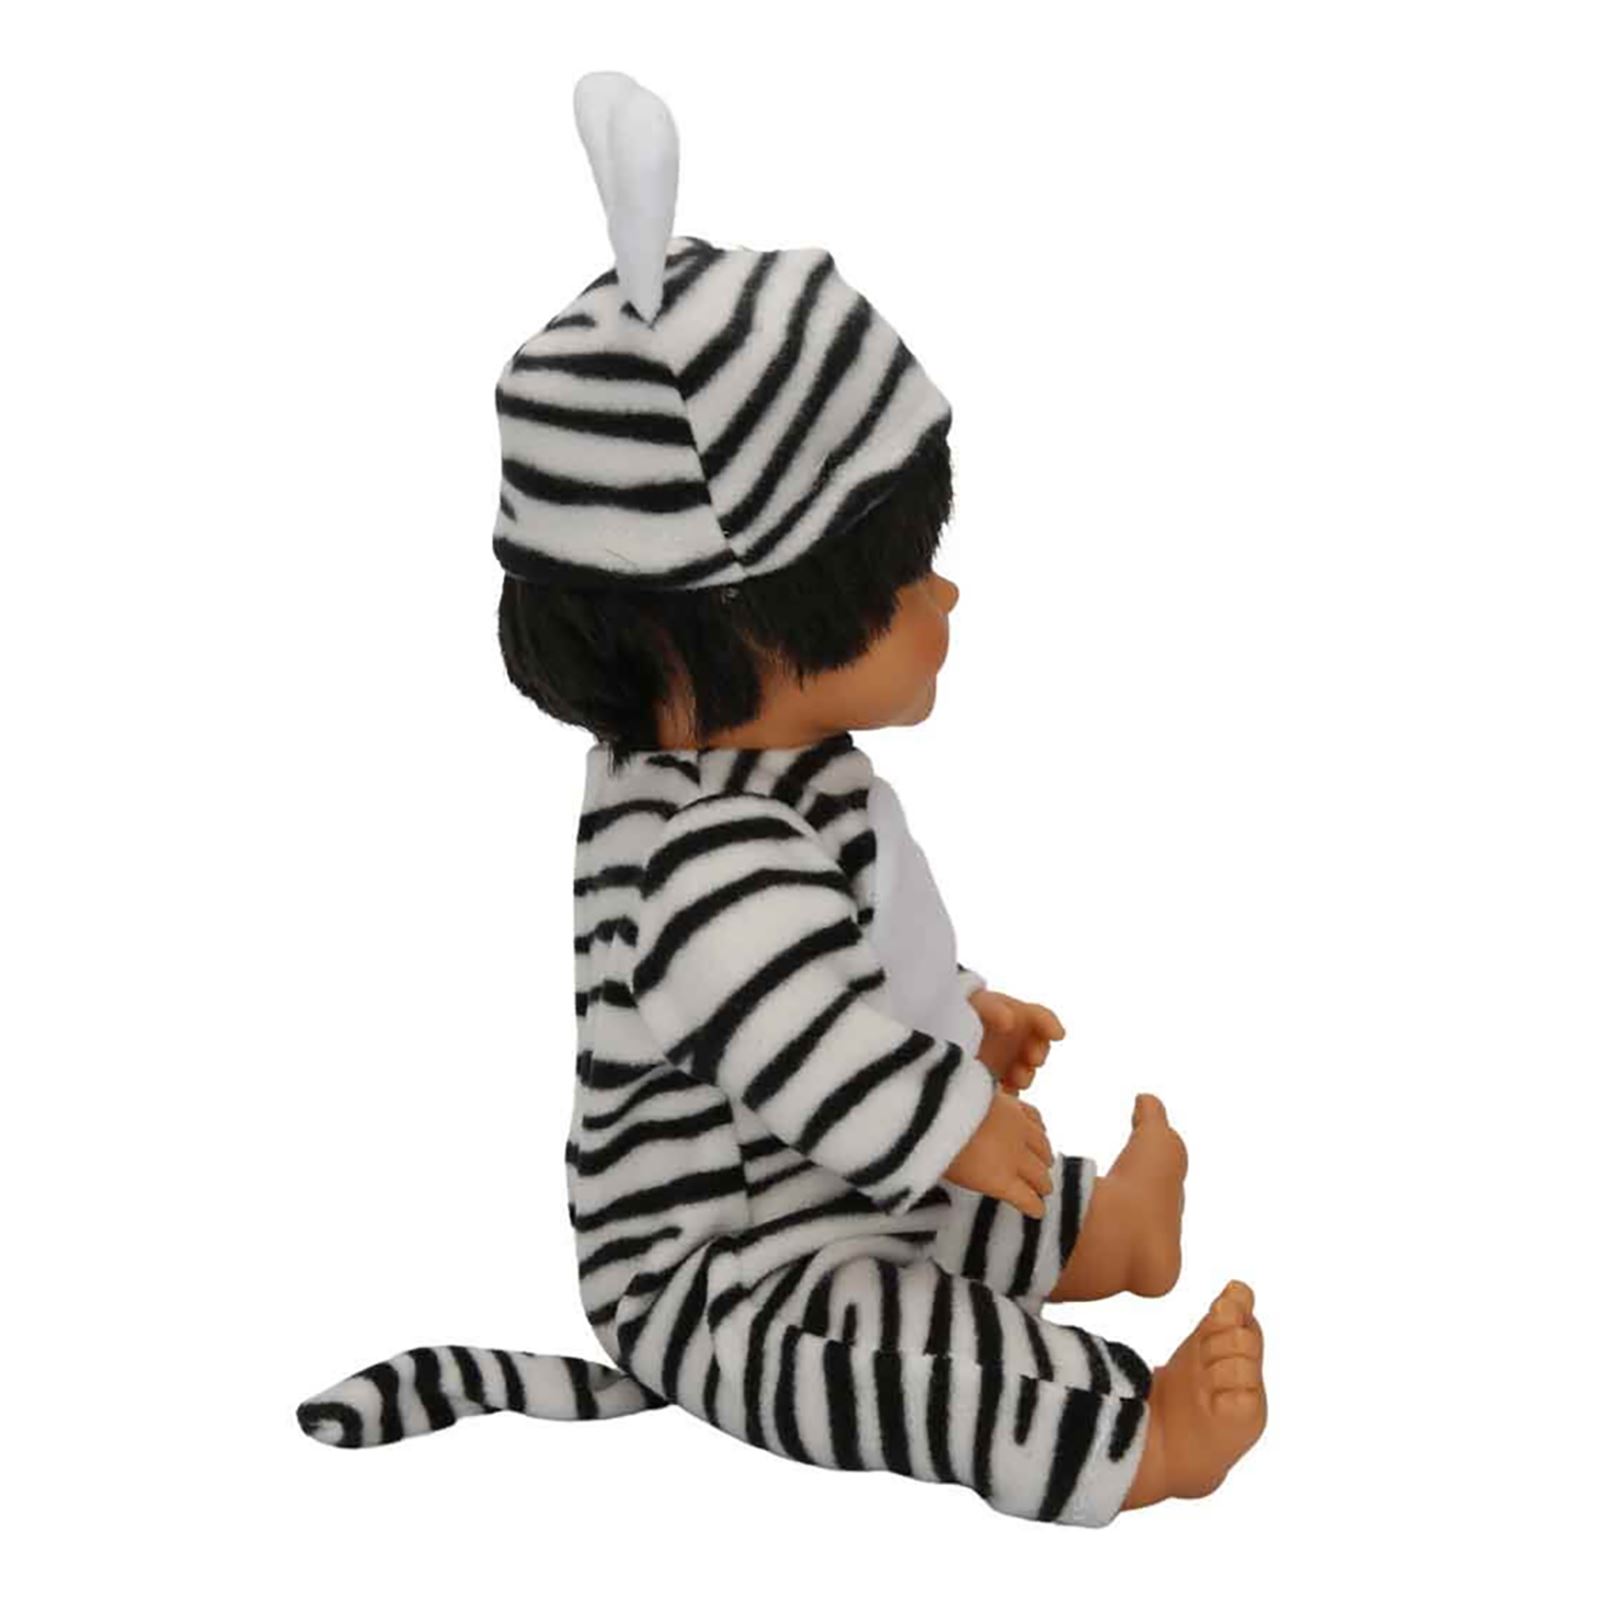 Sunman Oyuncak Bebelou Kostüm Partisi Bebeği 40 Cm Siyah-Beyaz